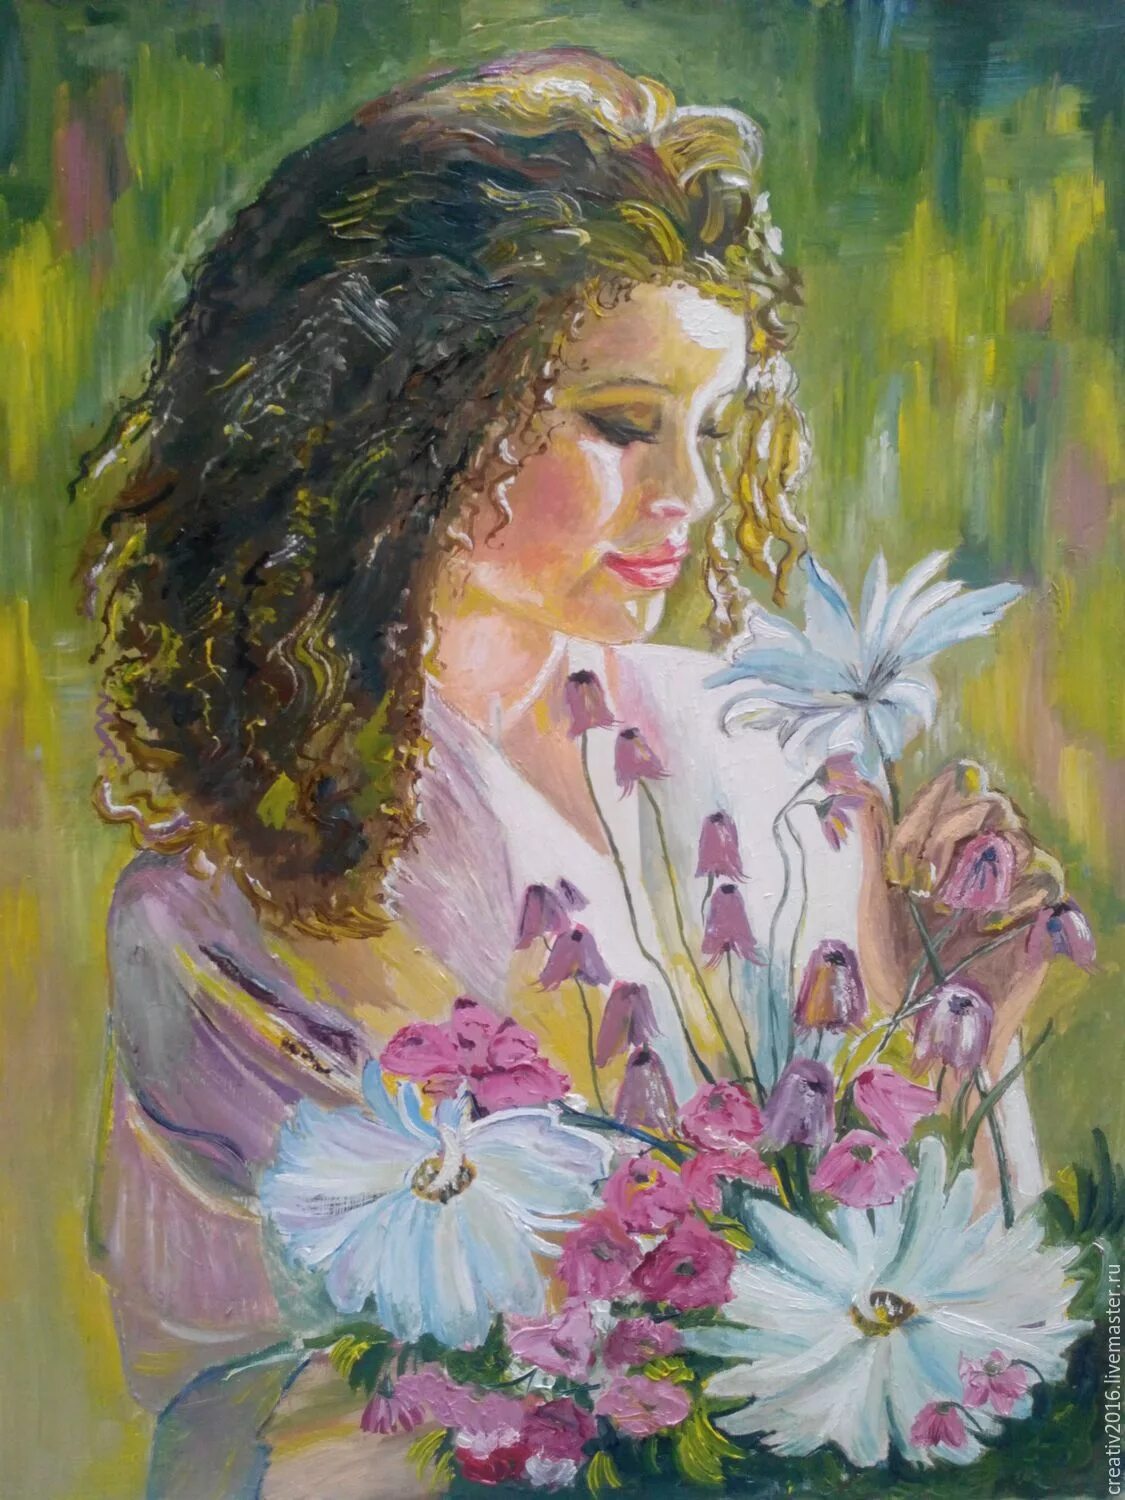 Картинка образ. "Девушка с букетом" 1933 Лебедев. Картина девушка с цветами. Портрет в цвете. Портрет женщины в цветах.